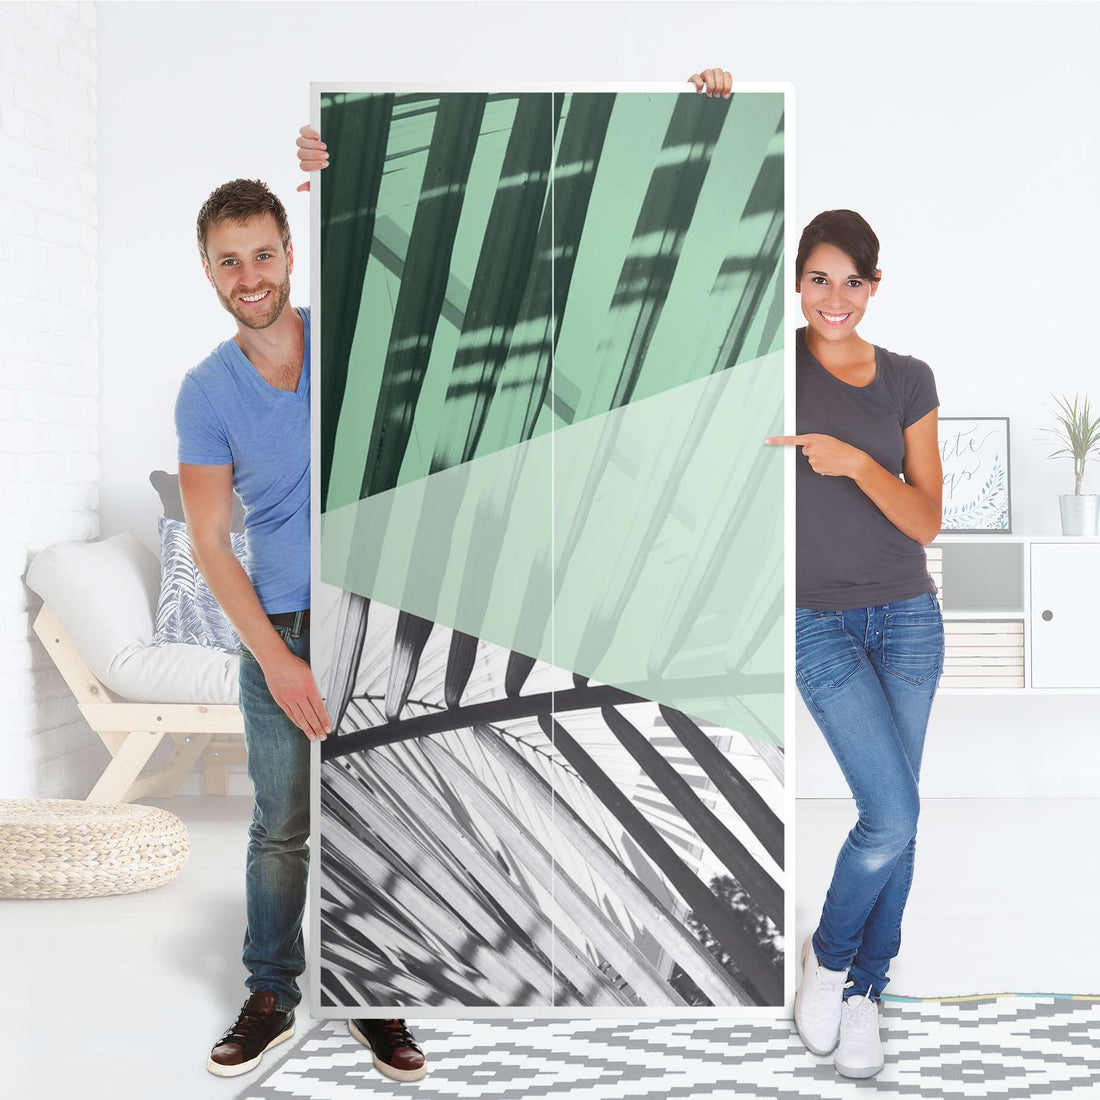 Klebefolie für Möbel Palmen mint - IKEA Pax Schrank 201 cm Höhe - 2 Türen - Folie